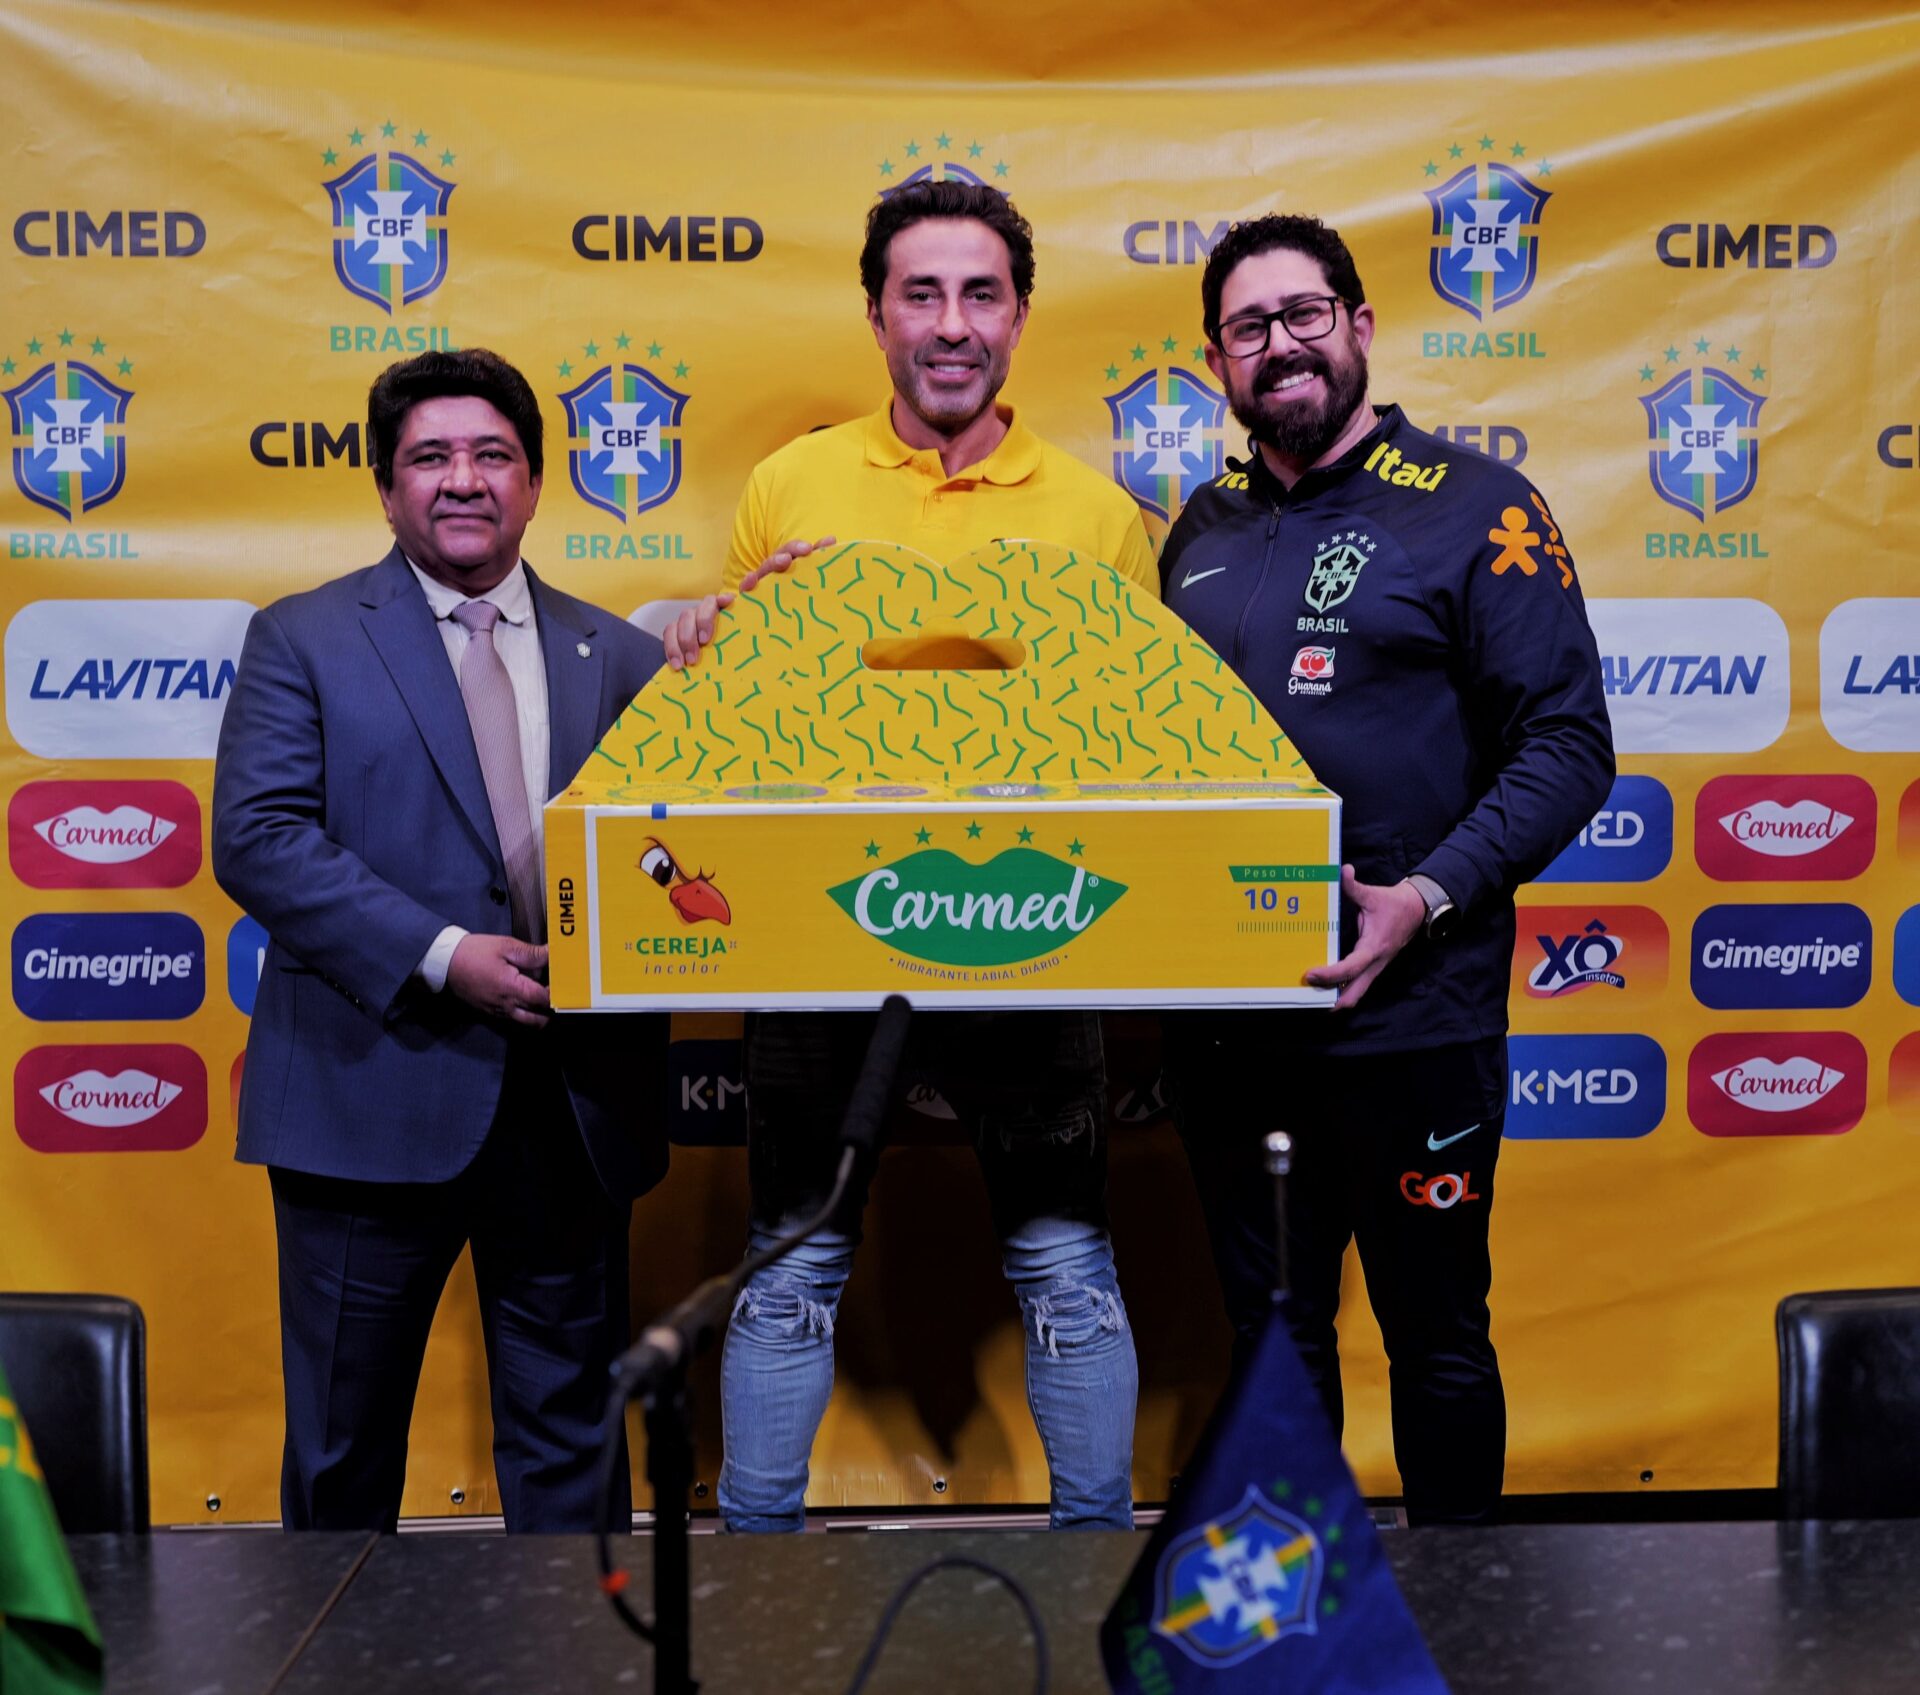 (Português) Cimed investe no novo ciclo da Copa do Mundo, masculina e feminina, com patrocínio à CBF e outras ações